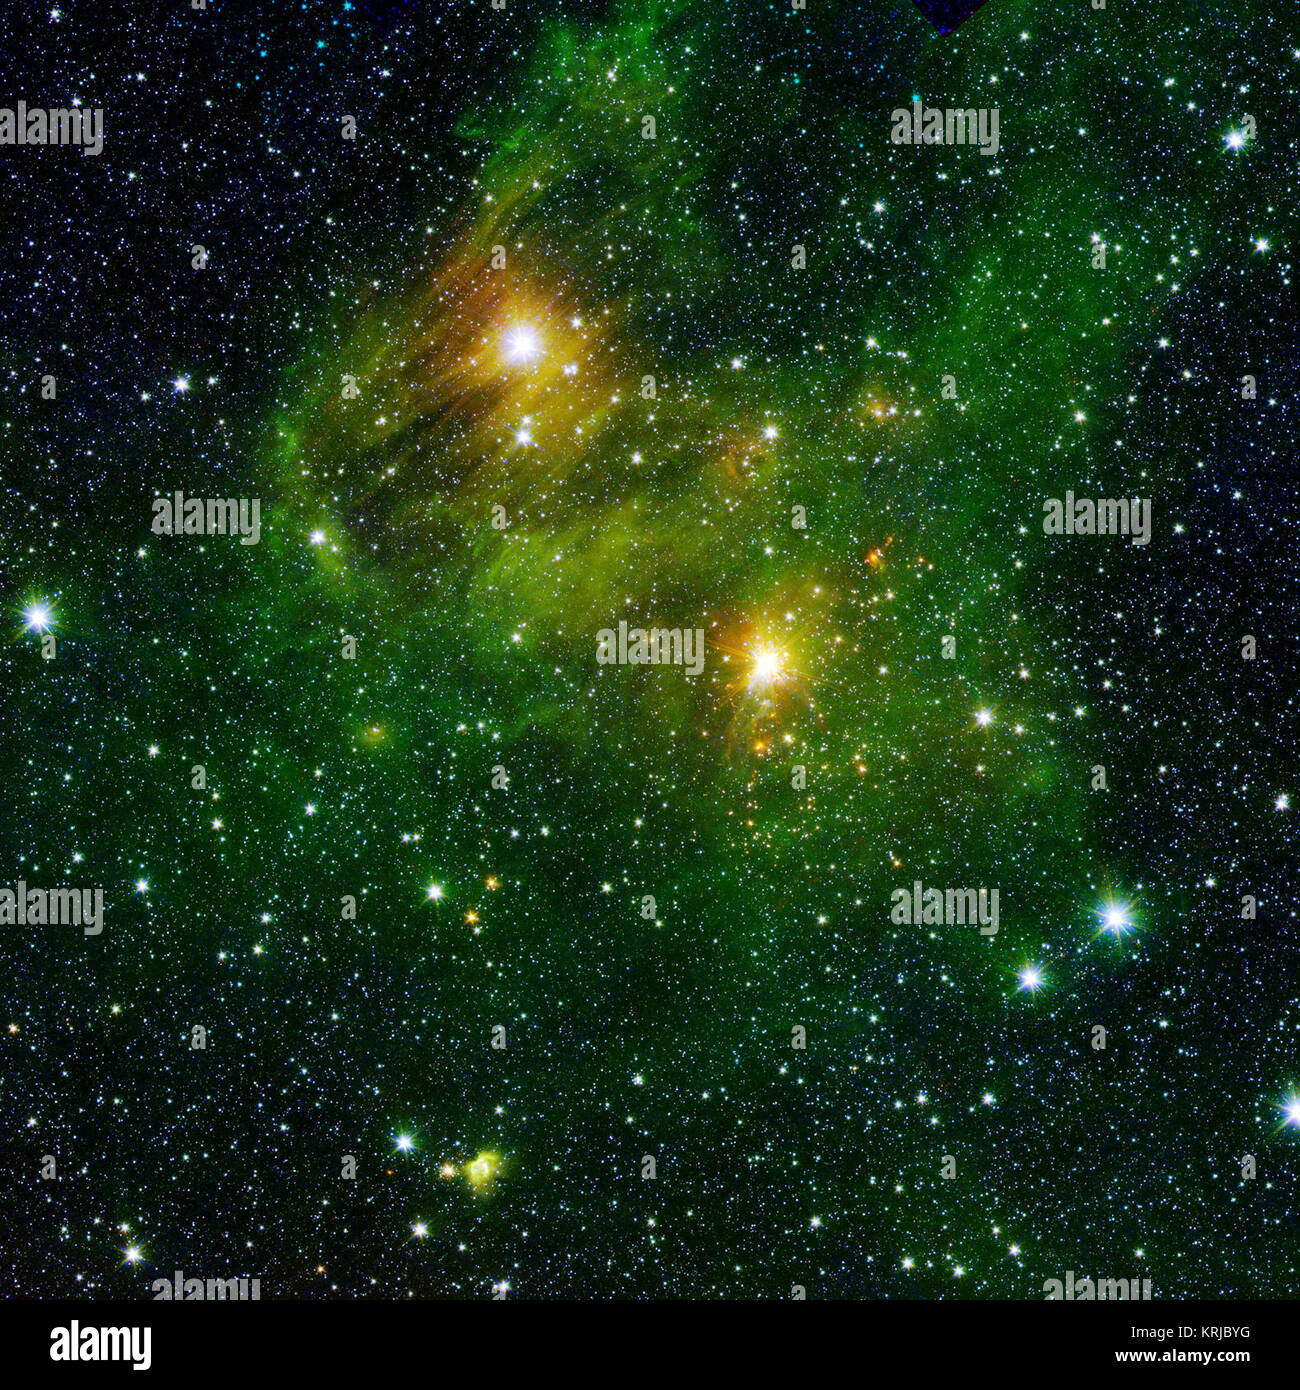 Deux étoiles extrêmement lumineux allume un brouillard verdâtre dans ce domaine et dans d'autres images de la nouvel aperçu de l'enquête360. Ce brouillard est composé d'hydrogène et de composés appelés hydrocarbures aromatiques polycycliques (HAP), qui se trouvent ici sur Terre dans les gaz d'échappement des véhicules et sur des barbecues carbonisés. Dans l'espace, les HAP se forment dans les nuages sombres qui donnent naissance aux étoiles. Ces molécules de fournir un moyen de visualiser les astronomes les périphéries des nuages de gaz et d'étudier leurs structures dans les moindres détails. Les HAP ne sont pas réellement 'Green' ; un représentant des codes couleur dans ces images scientifiques permet d'observer les HAP glo Banque D'Images